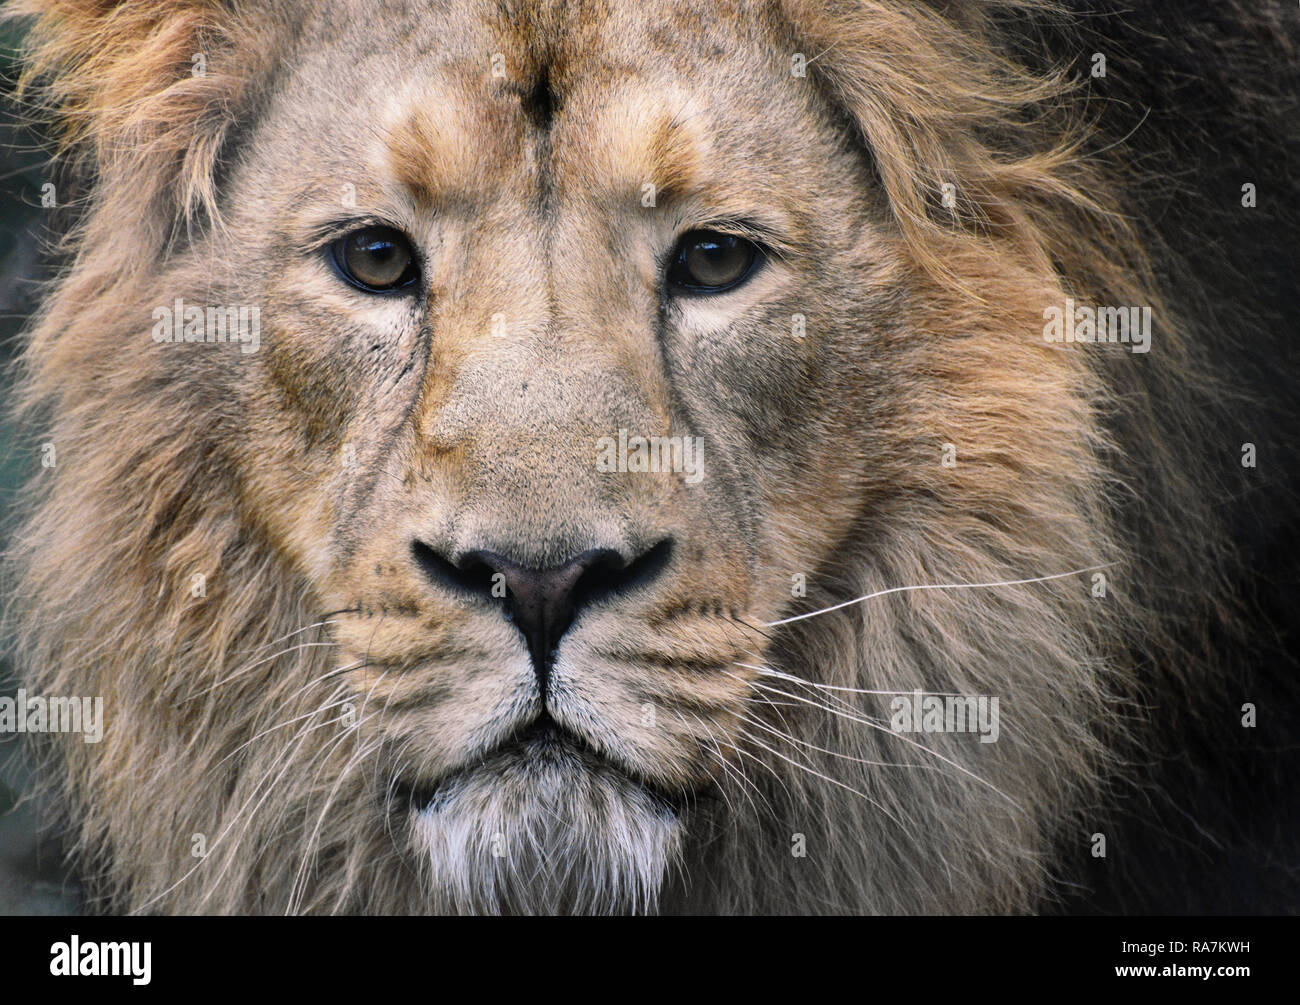 Homme Lion Portrait - close up face, contact avec les yeux Banque D'Images